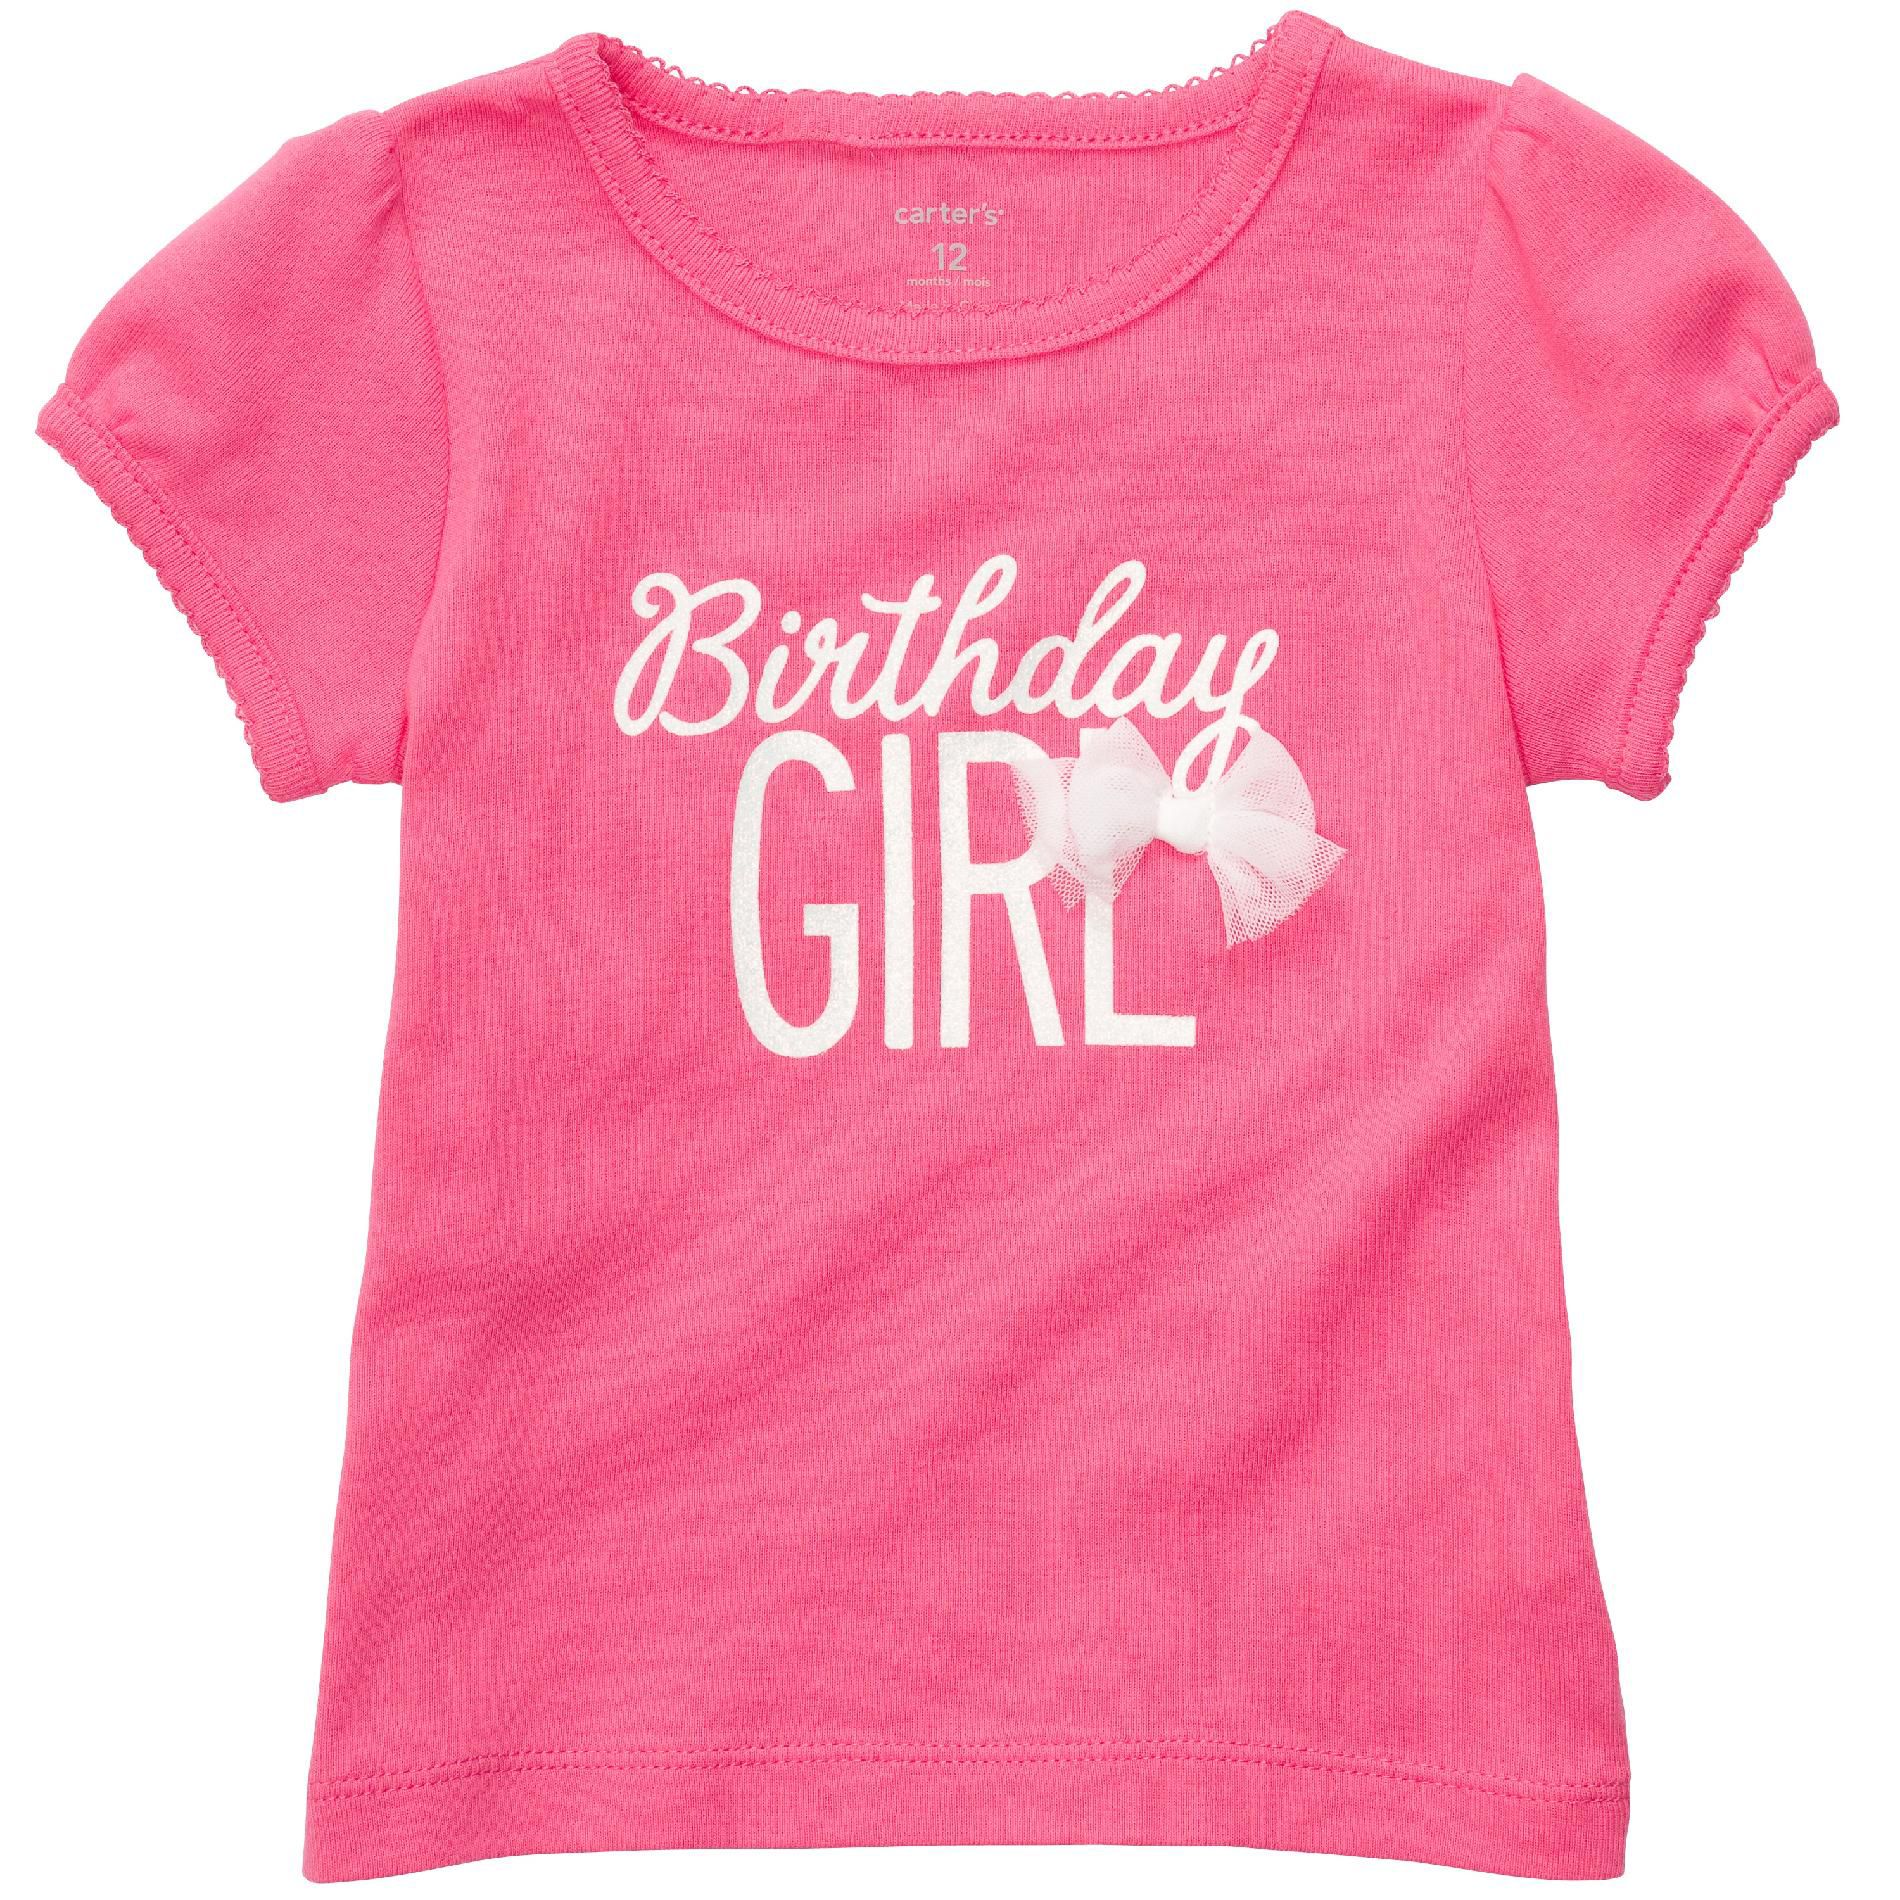 Carter's Infant Girl&#8217;s T-shirt &#8216;Birthday Girl&#8217; Short Sleeve